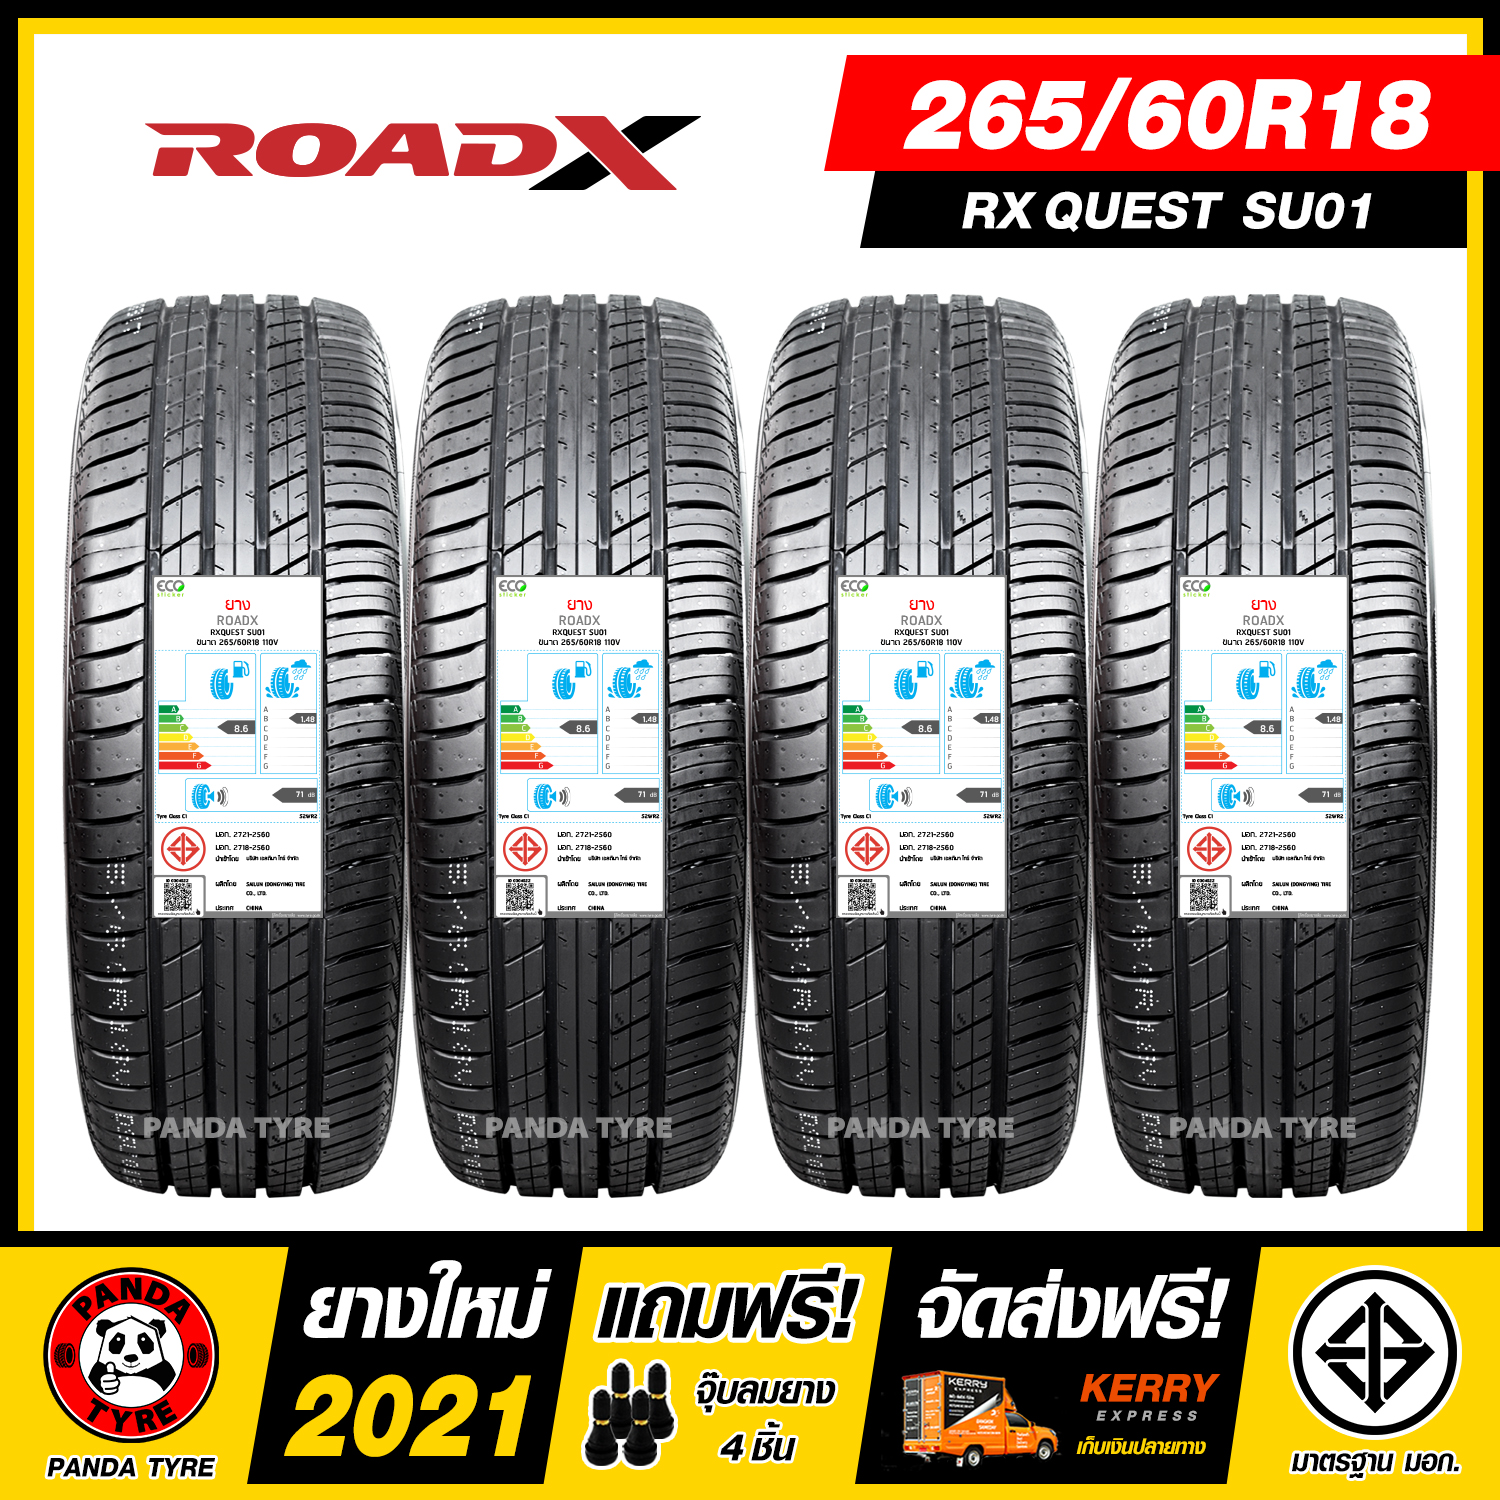 ROADX 265/60R18 ยางรถยนต์ขอบ18 รุ่น RXQUEST SU01 - 4 เส้น (ยางใหม่ผลิตปี 2021)